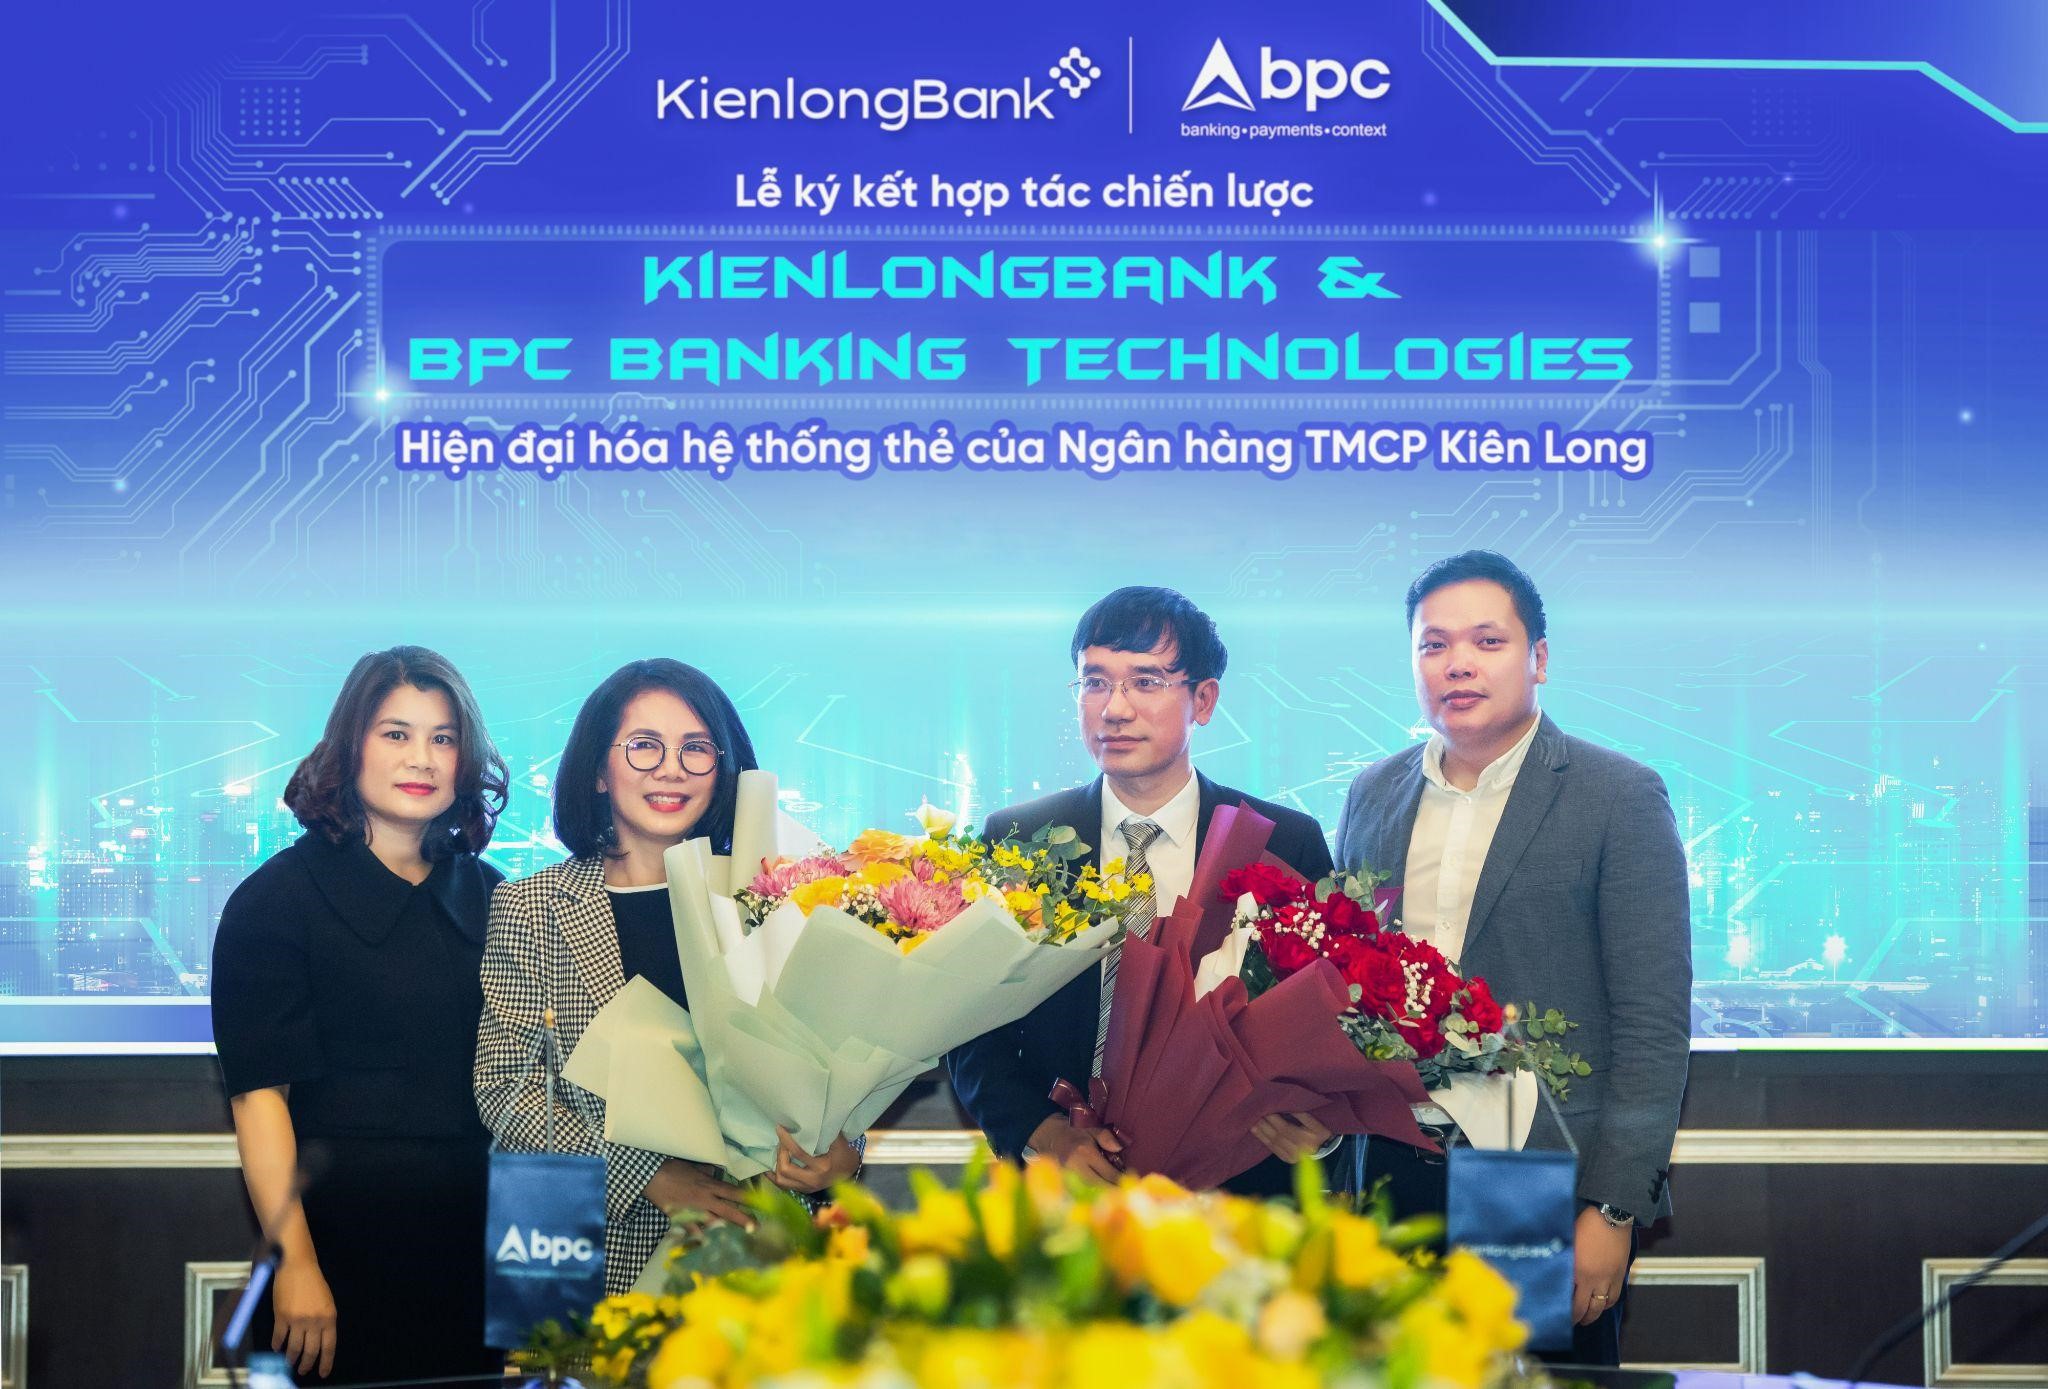 KienlongBank ký kết hợp tác chiến lược, chuyển đổi số hệ thống thẻ ngân hàng